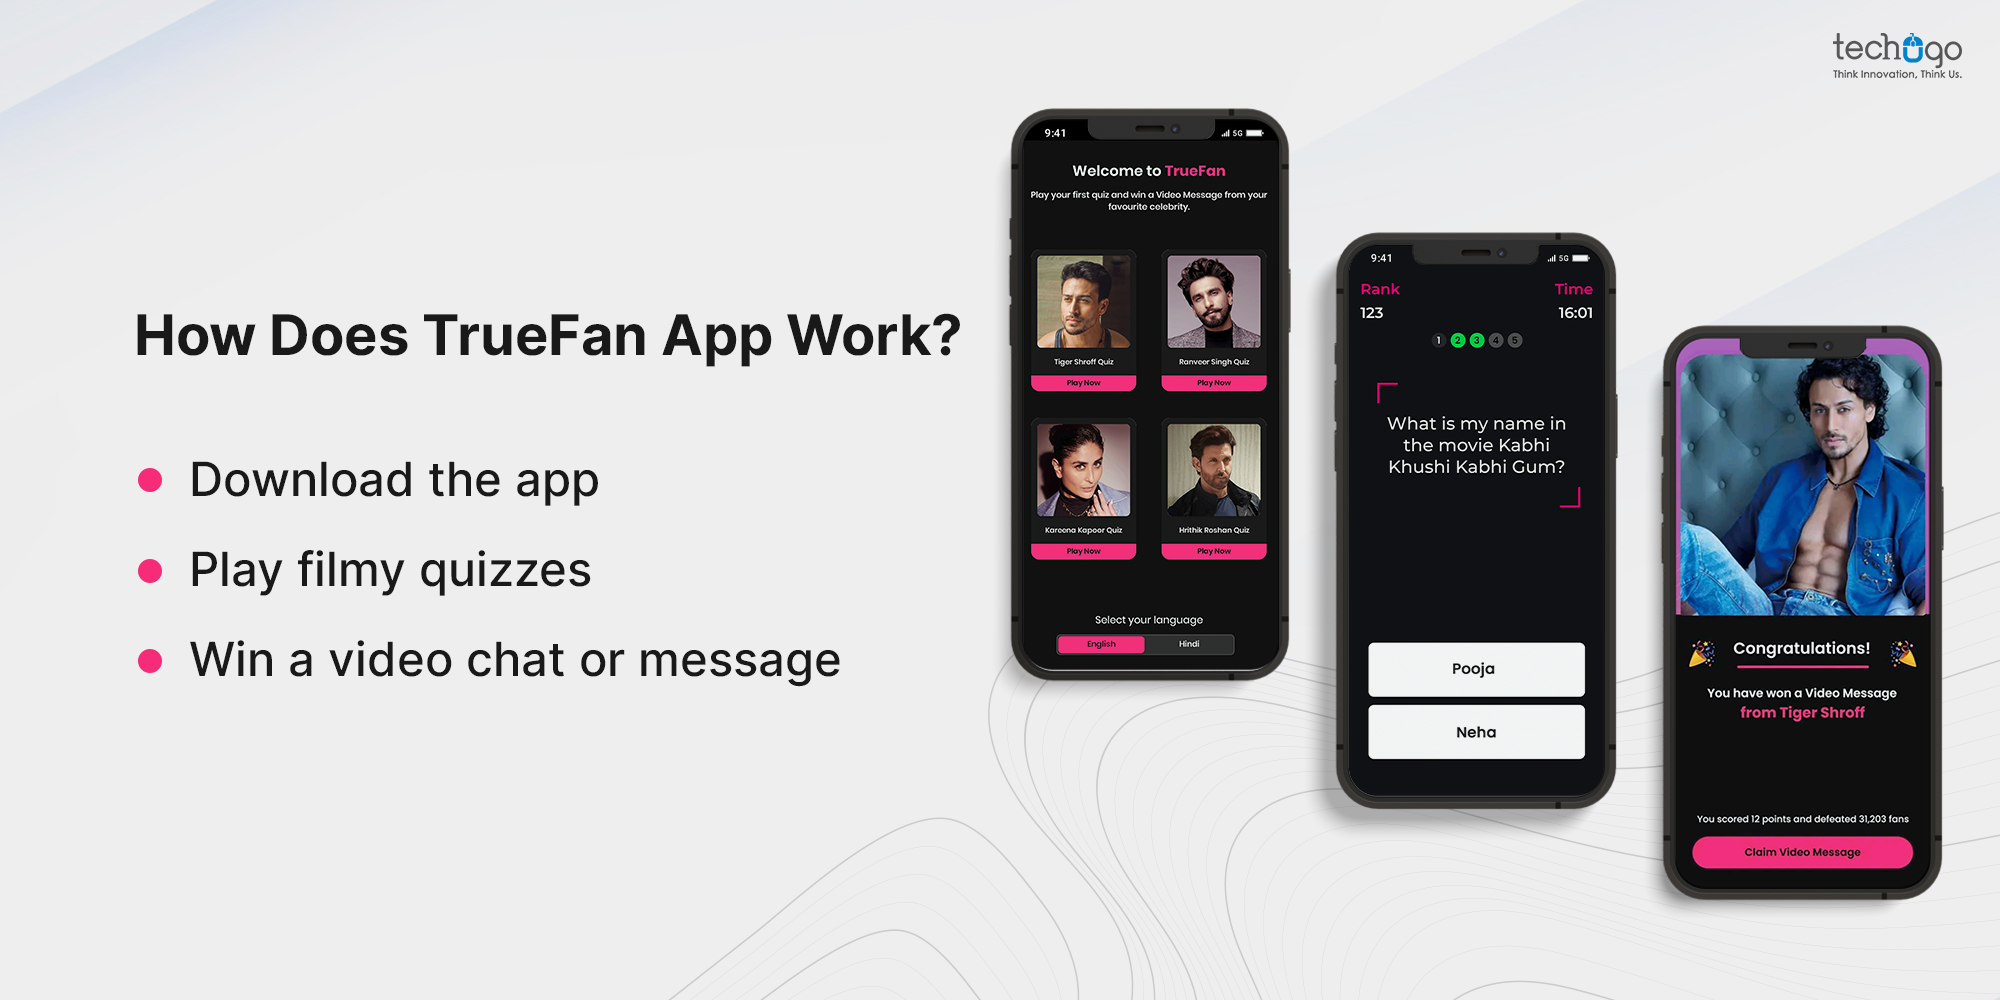 How Does TrueFan App Work?